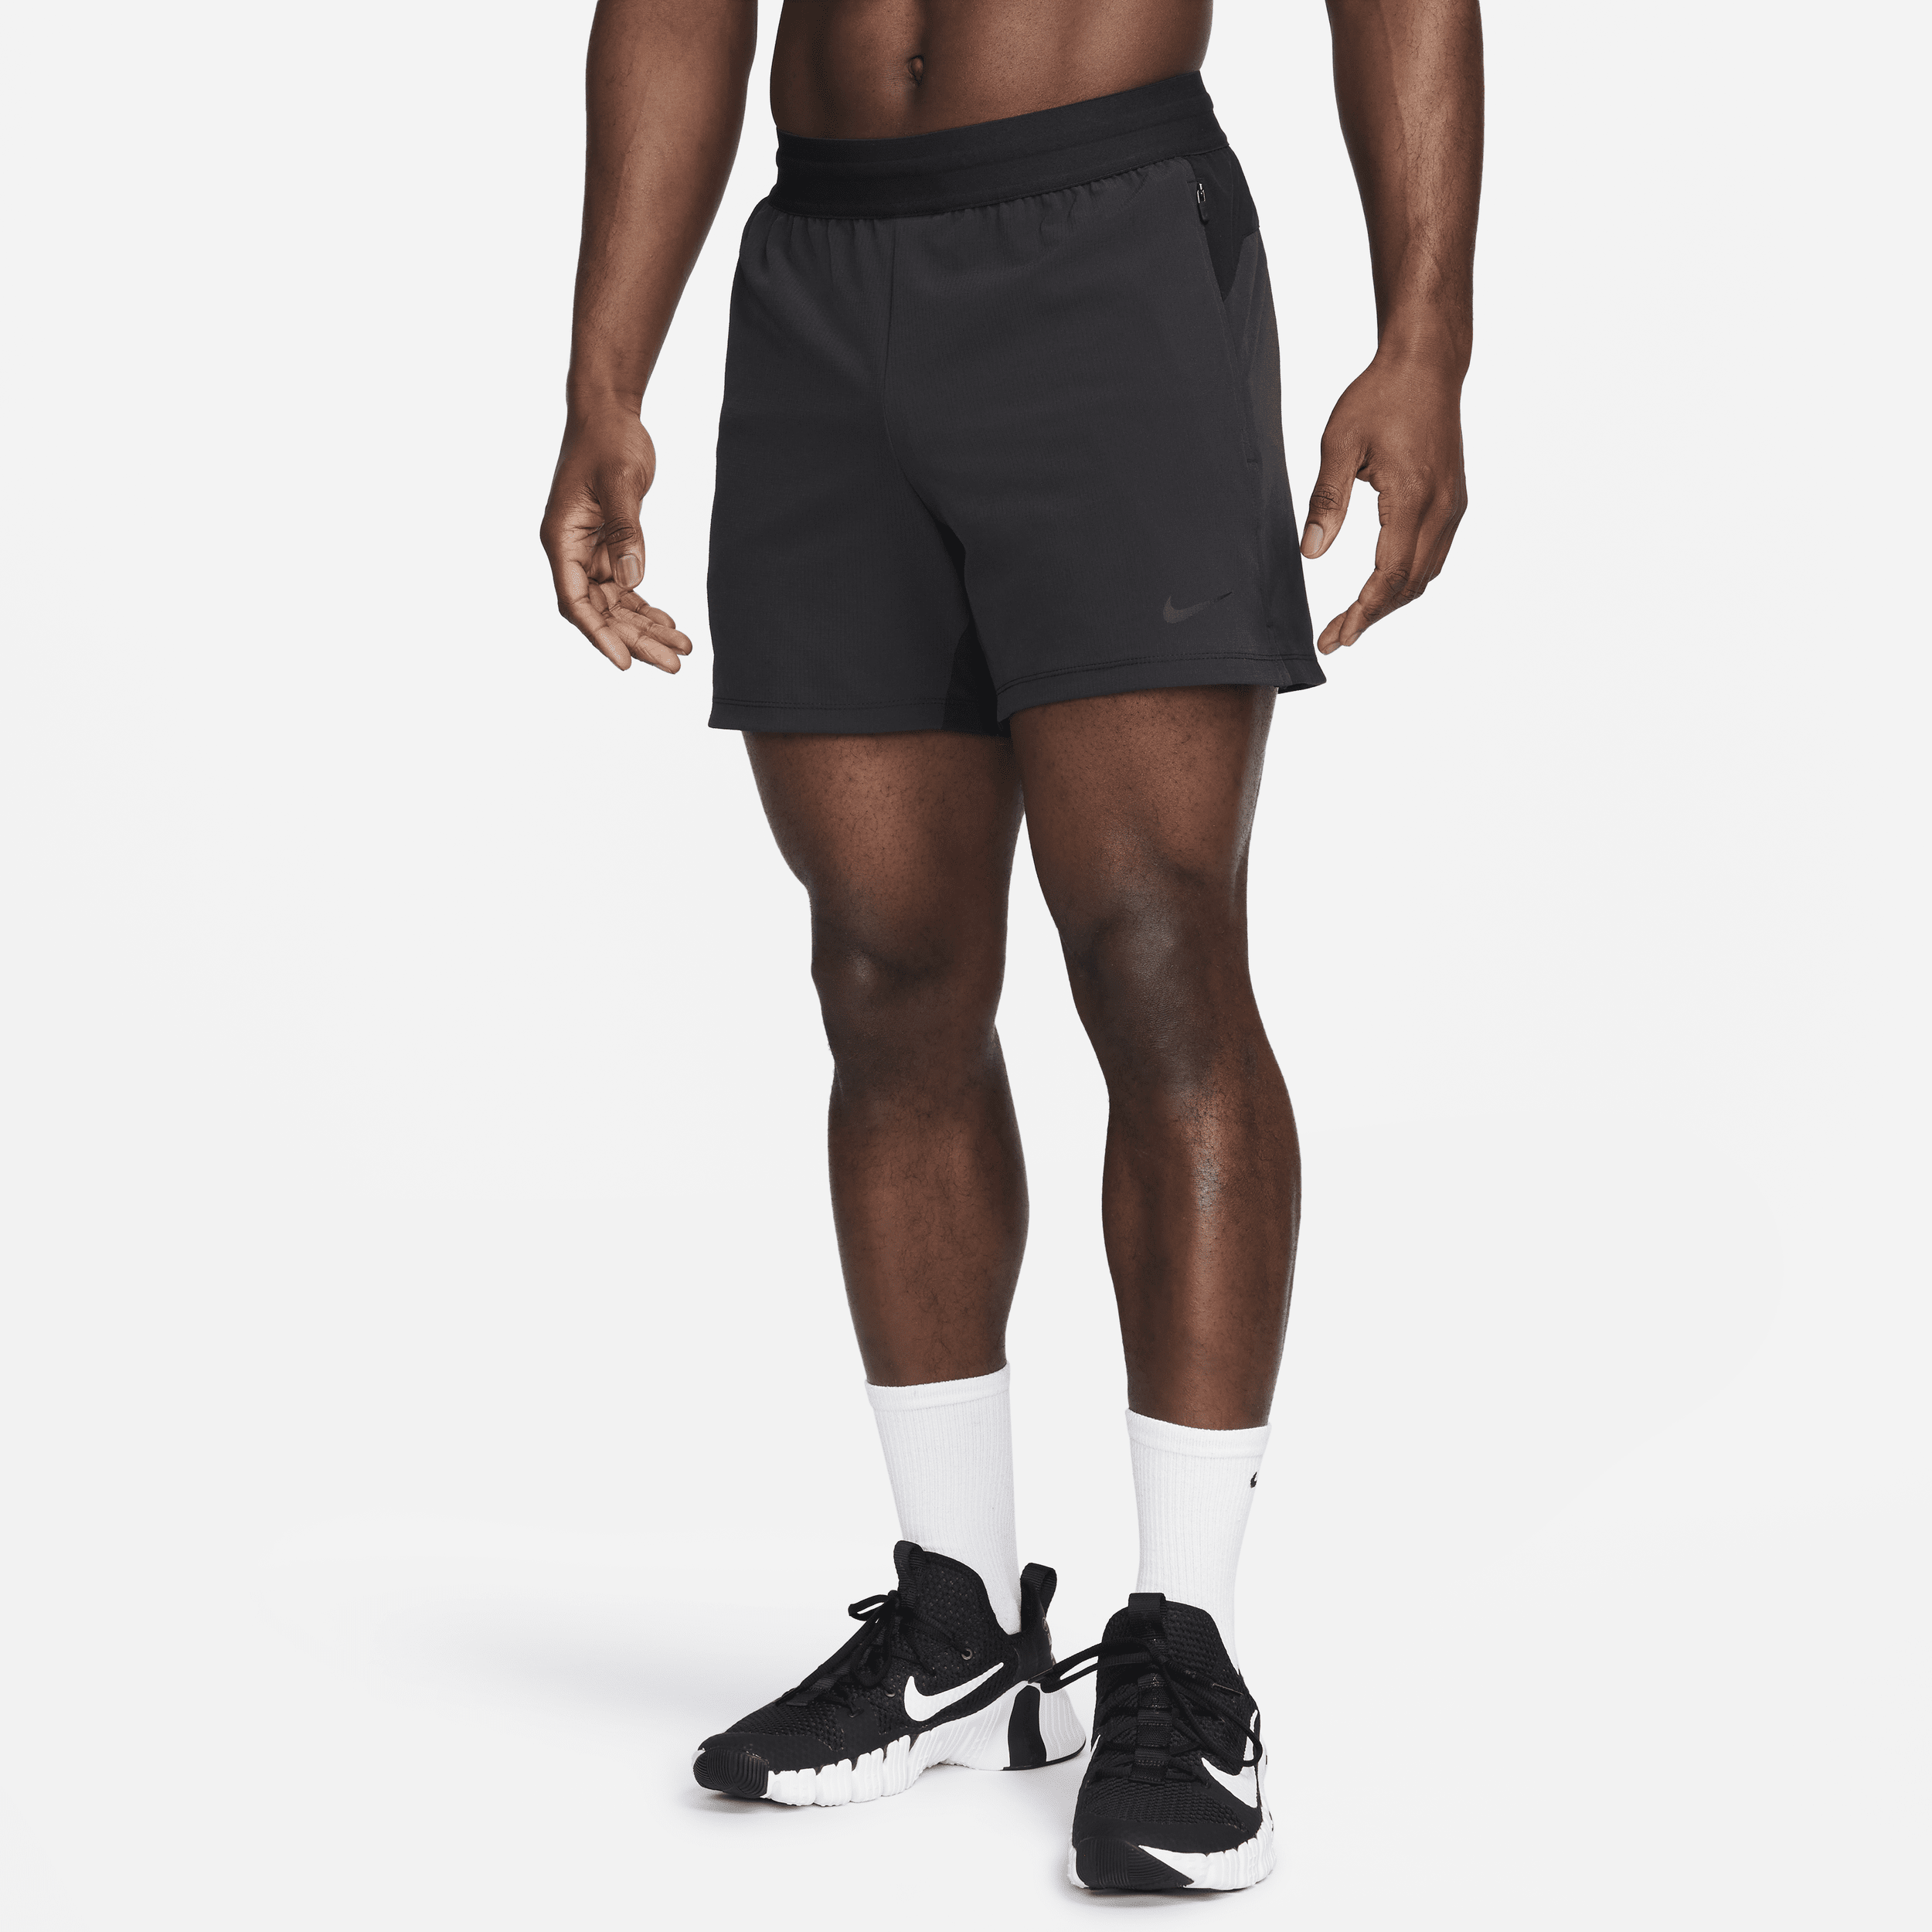 Nike Flex Rep Dri-FIT-fitnessshorts uden for (13 cm) til mænd - sort